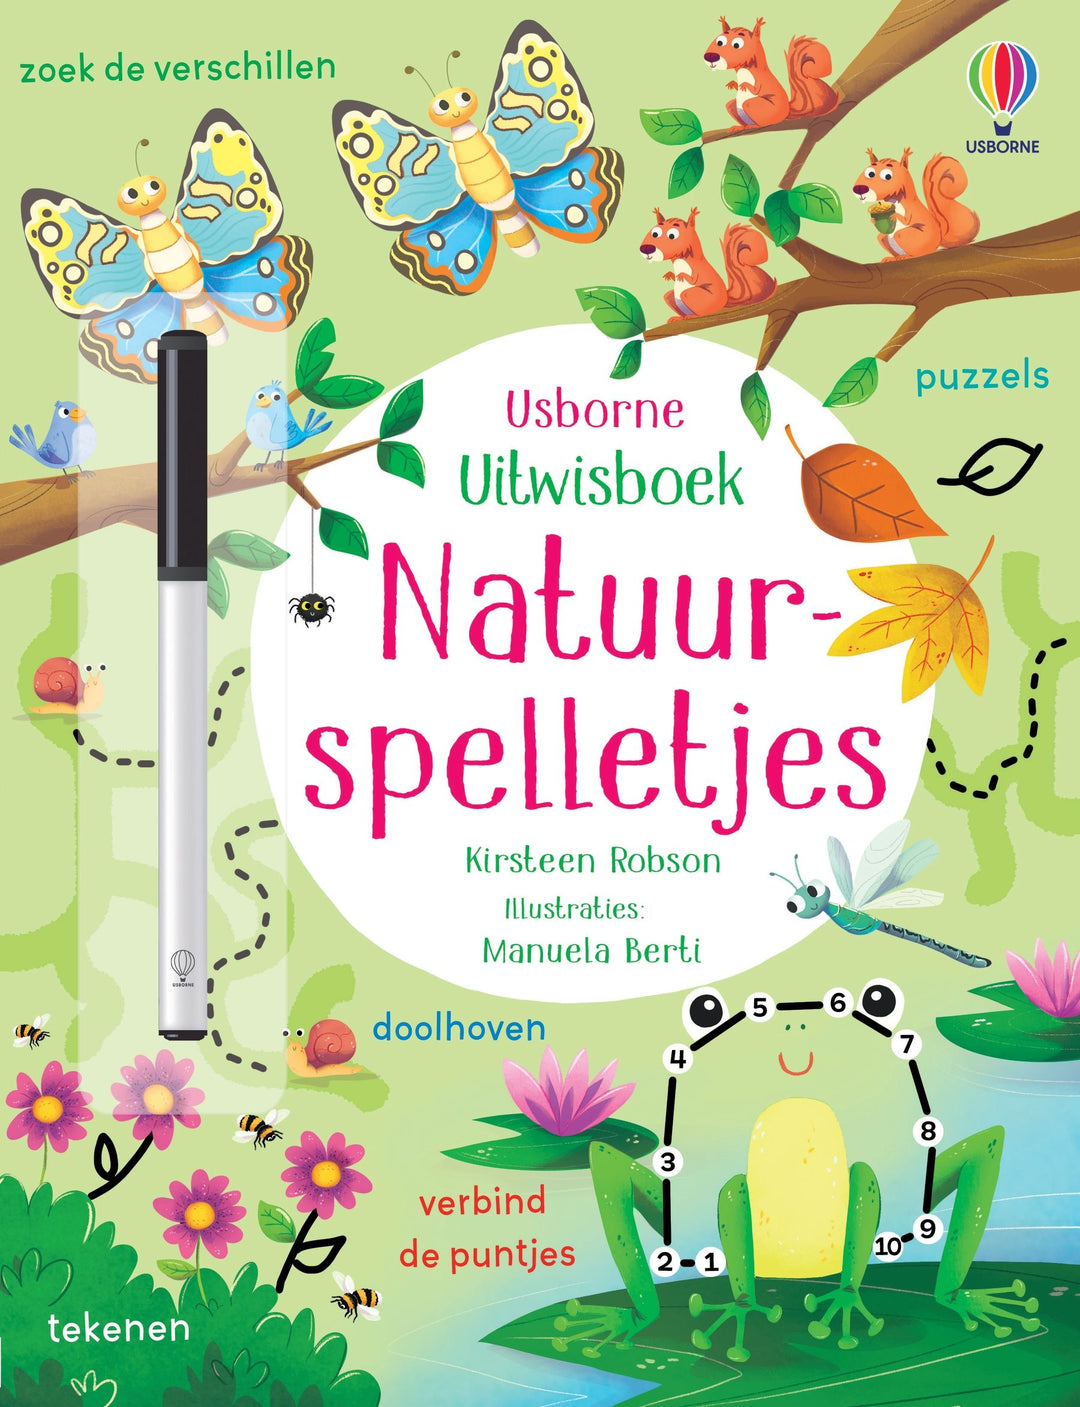 Interactief 'Boek Natuurspelletjes' van Usborne, compleet met uitwisbare pen voor eindeloos leerplezier over natuur, vanaf 3 jaar